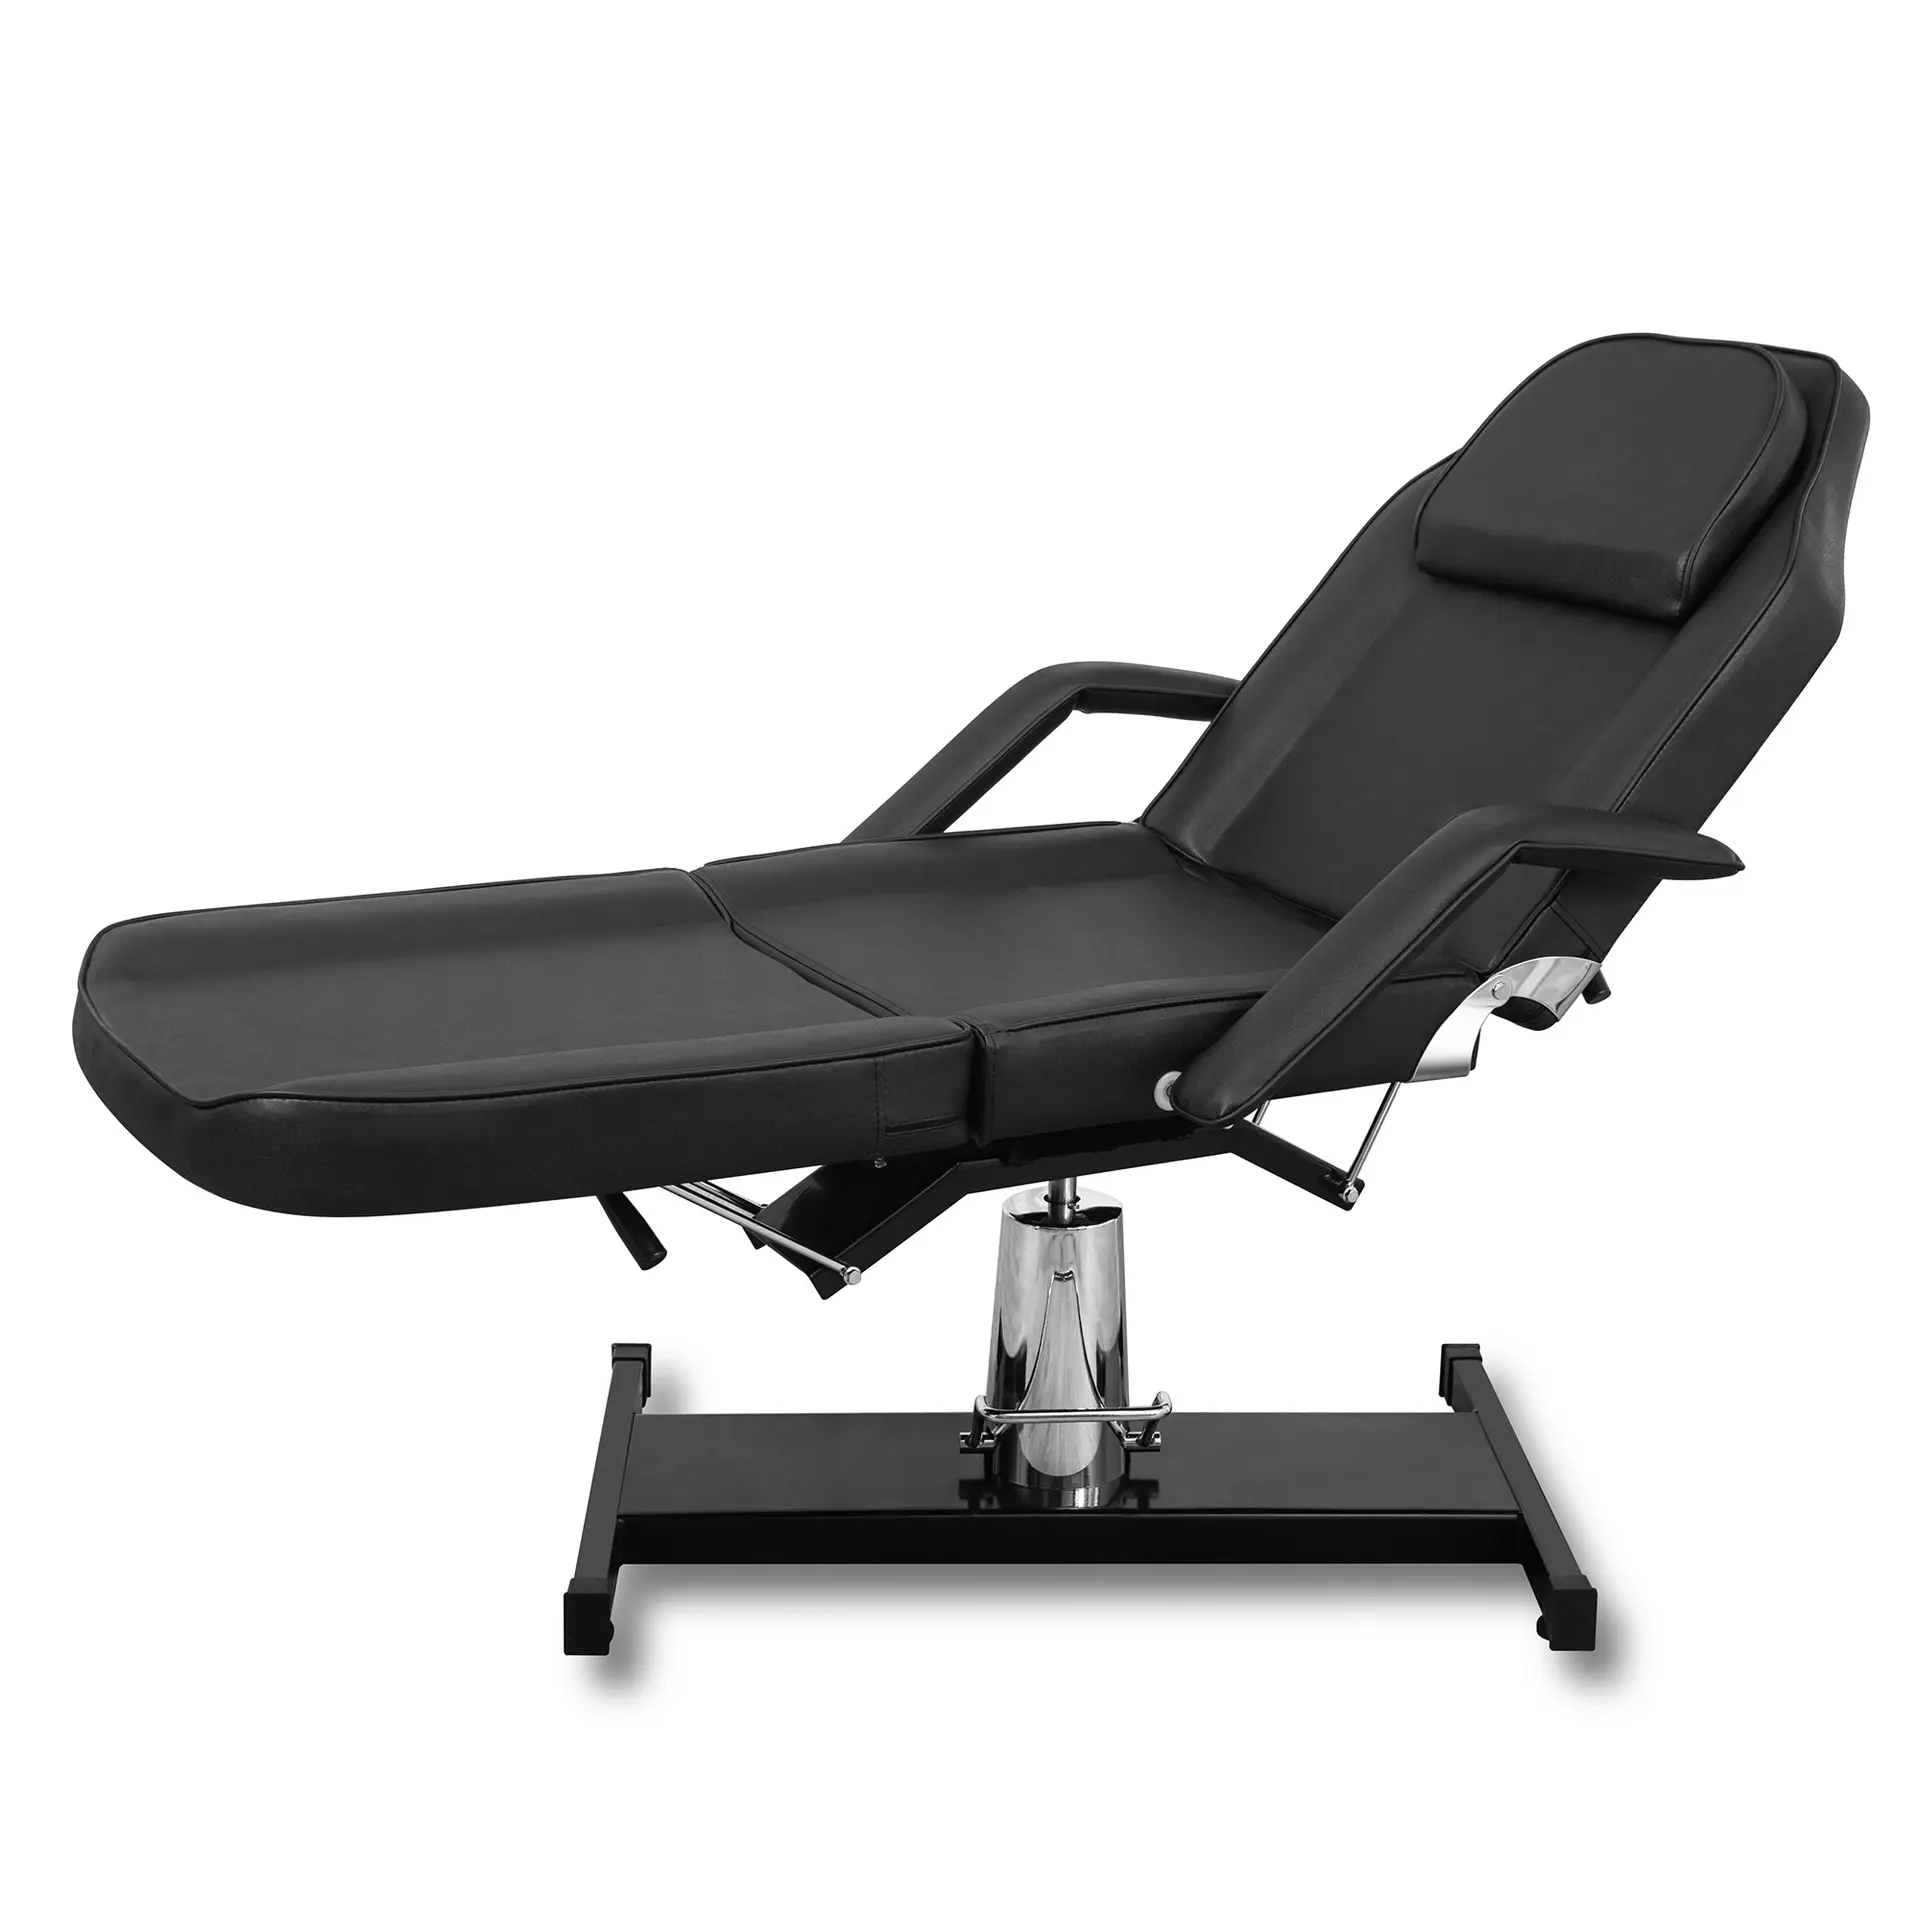 Multi-funzionale tatuaggio letto di inchiostro sedia reclinabile pieghevole regolabile letto di bellezza per il ricamo tatuaggio tavoli e letti da massaggio